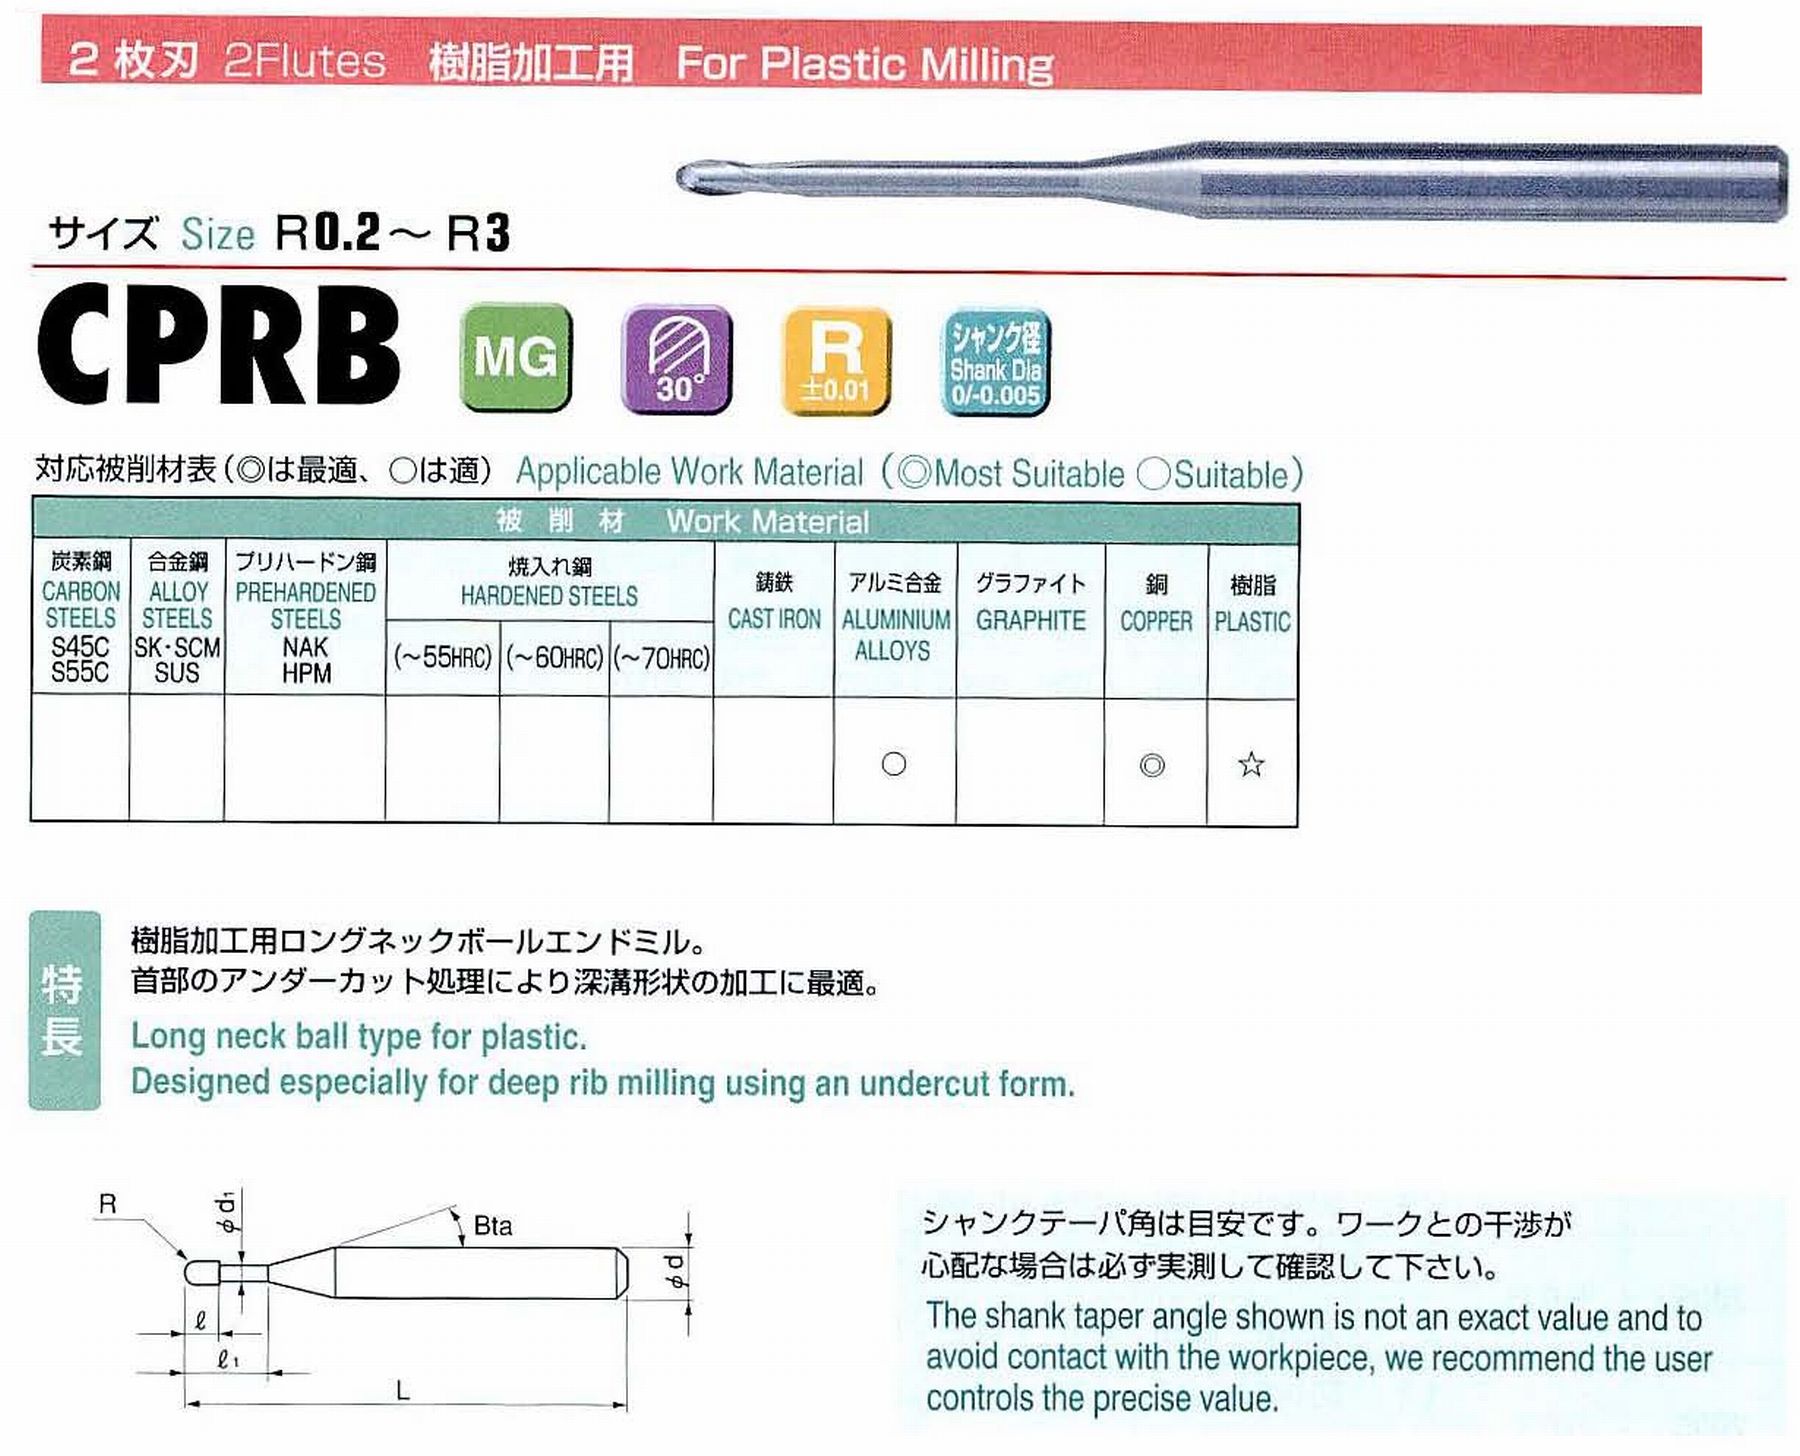 ユニオンツール 2枚刃 CPRB2016-8 ボール半径R0.8 有効長8 刃長1.5 首径1.5 シャンクテーパ角11° 全長45 シャンク径4